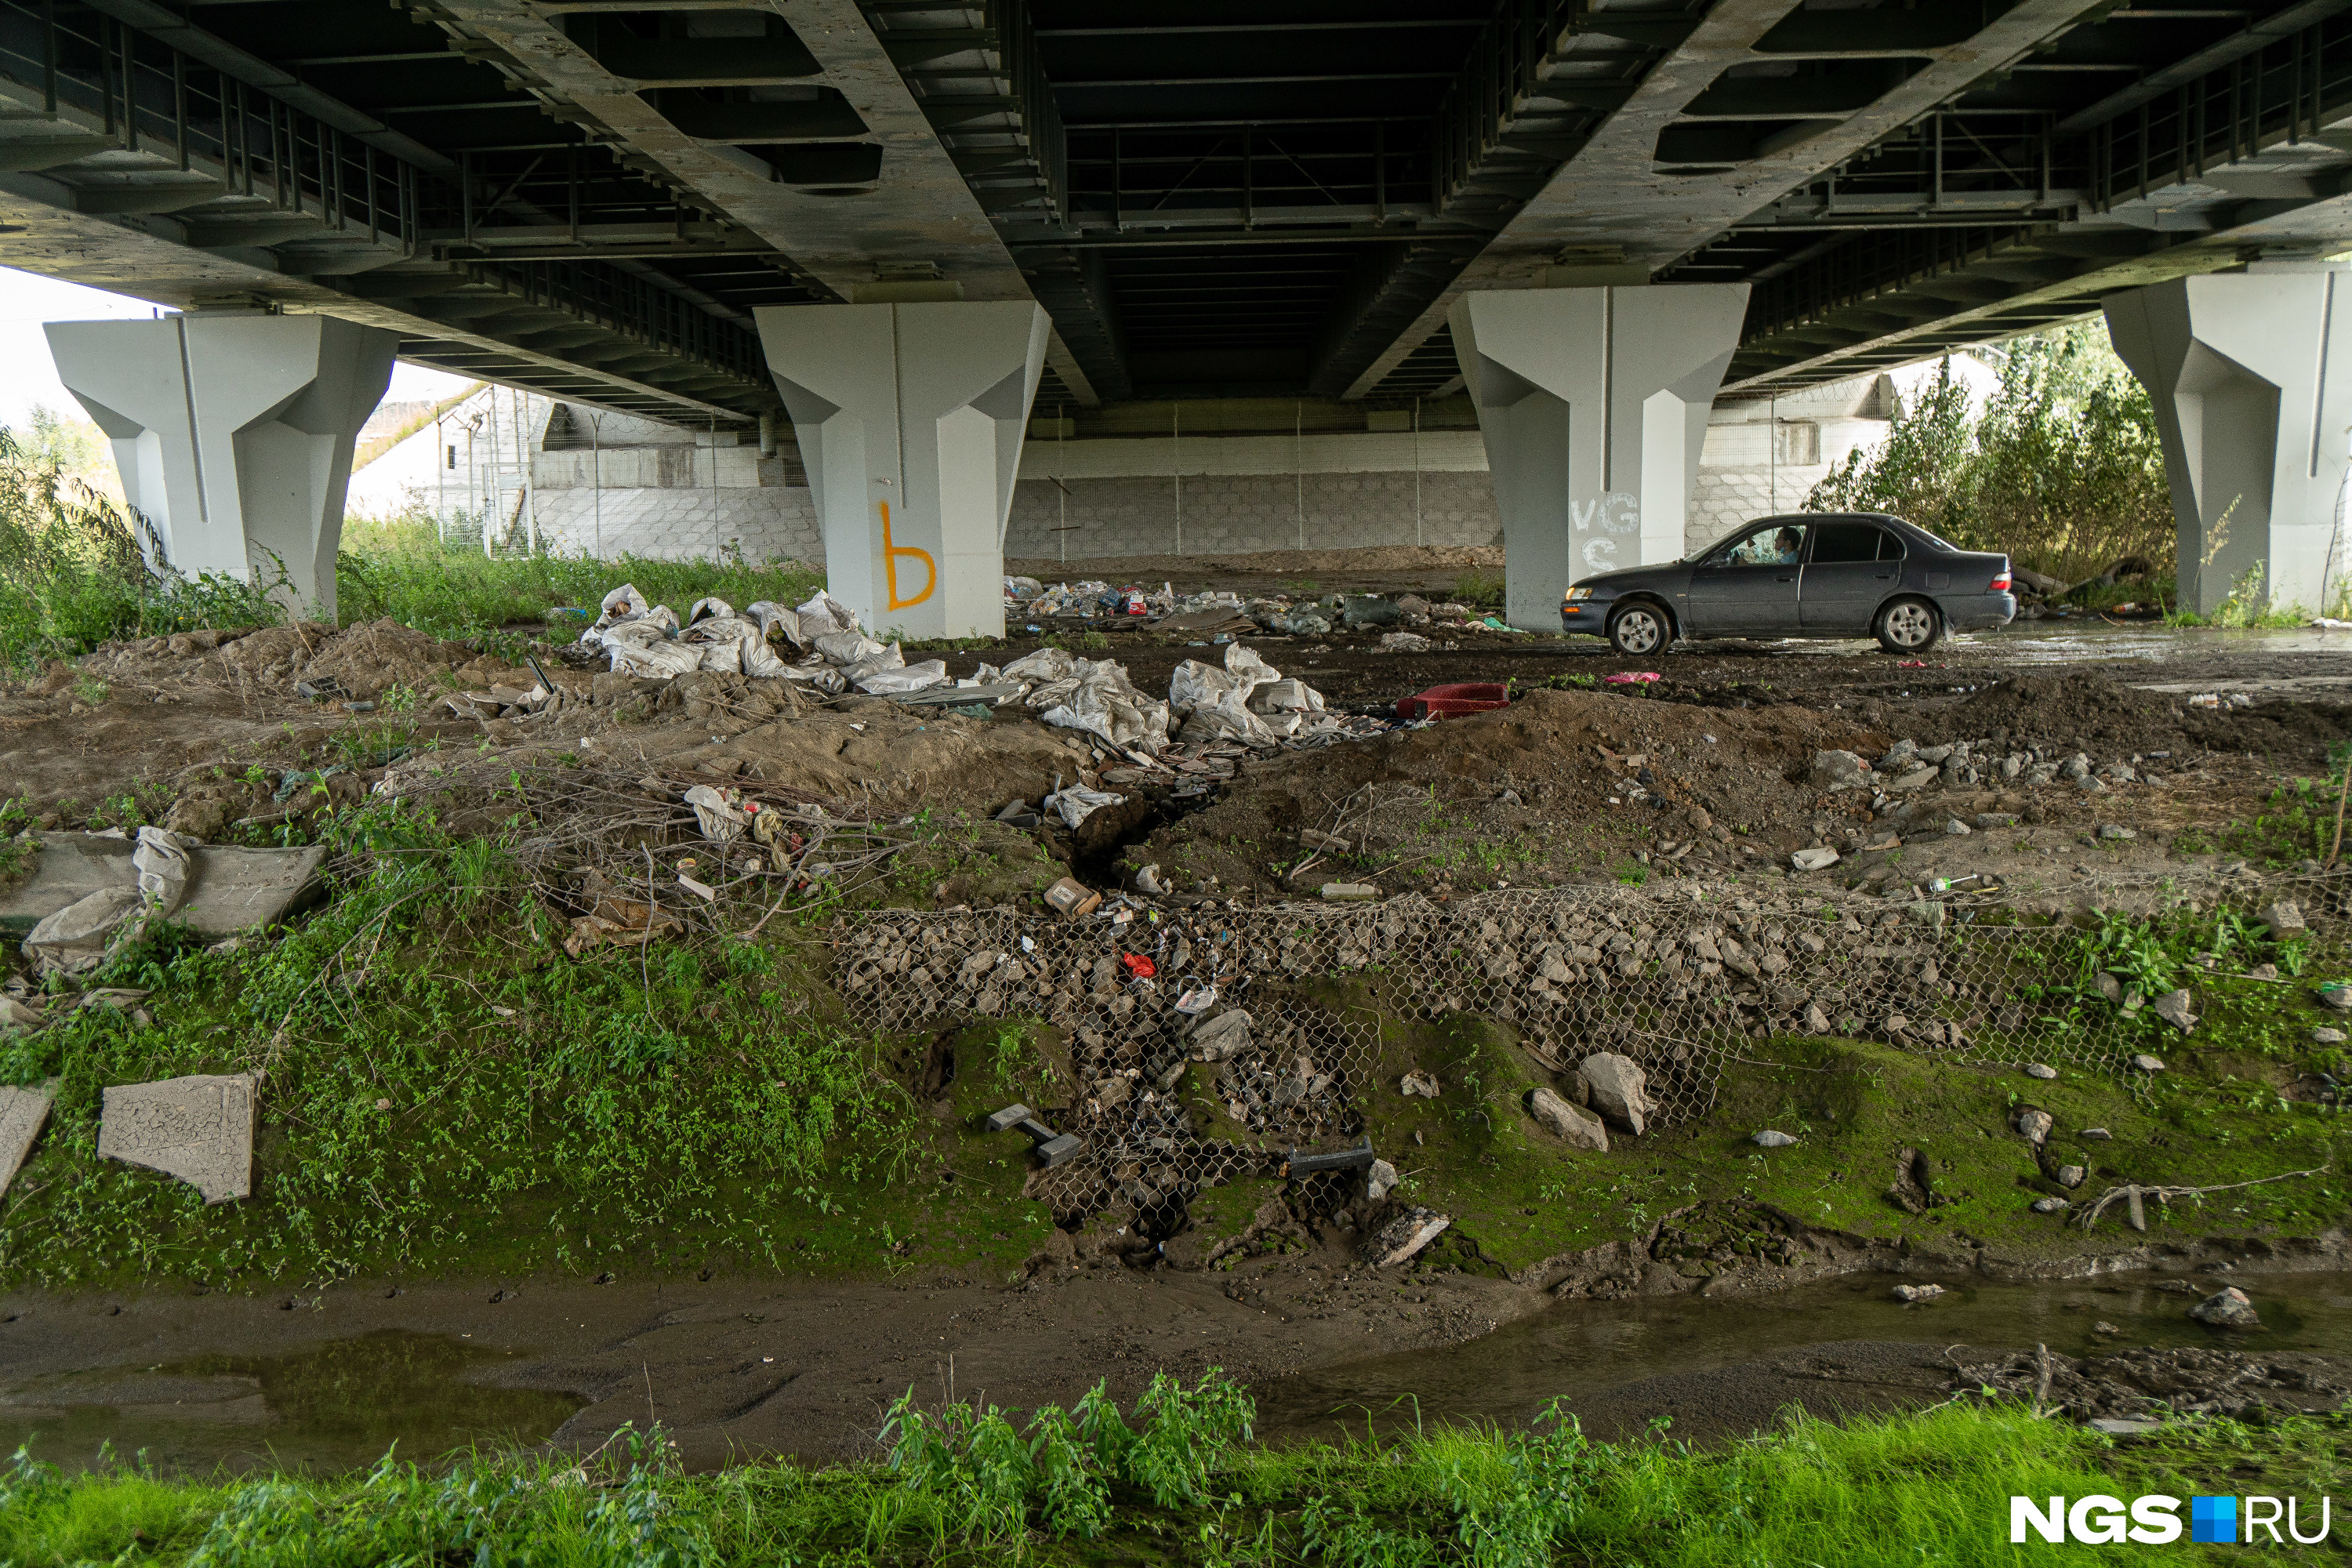 Под мостом на берегах уже не узнаваемой Камышенки кучи мусора — как, впрочем, под любым мостом на берегах любой городской речки